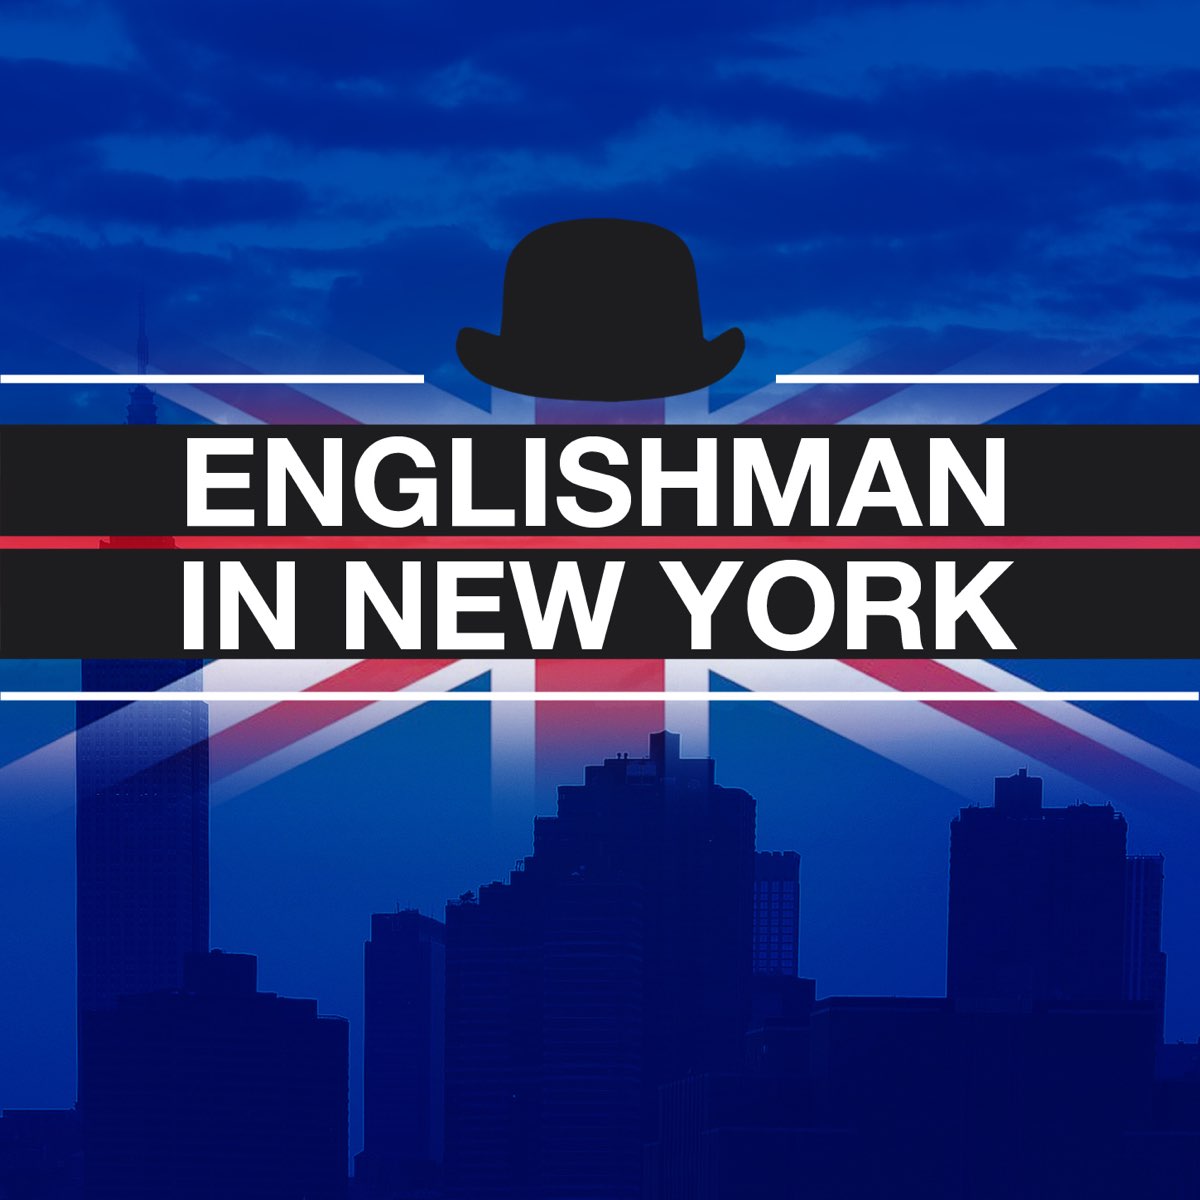 Стинг инглиш мен. Инглиш Мэн. Englishman in New York обложка. Инглиш Мэн Мем. New York Orchestra логотип.